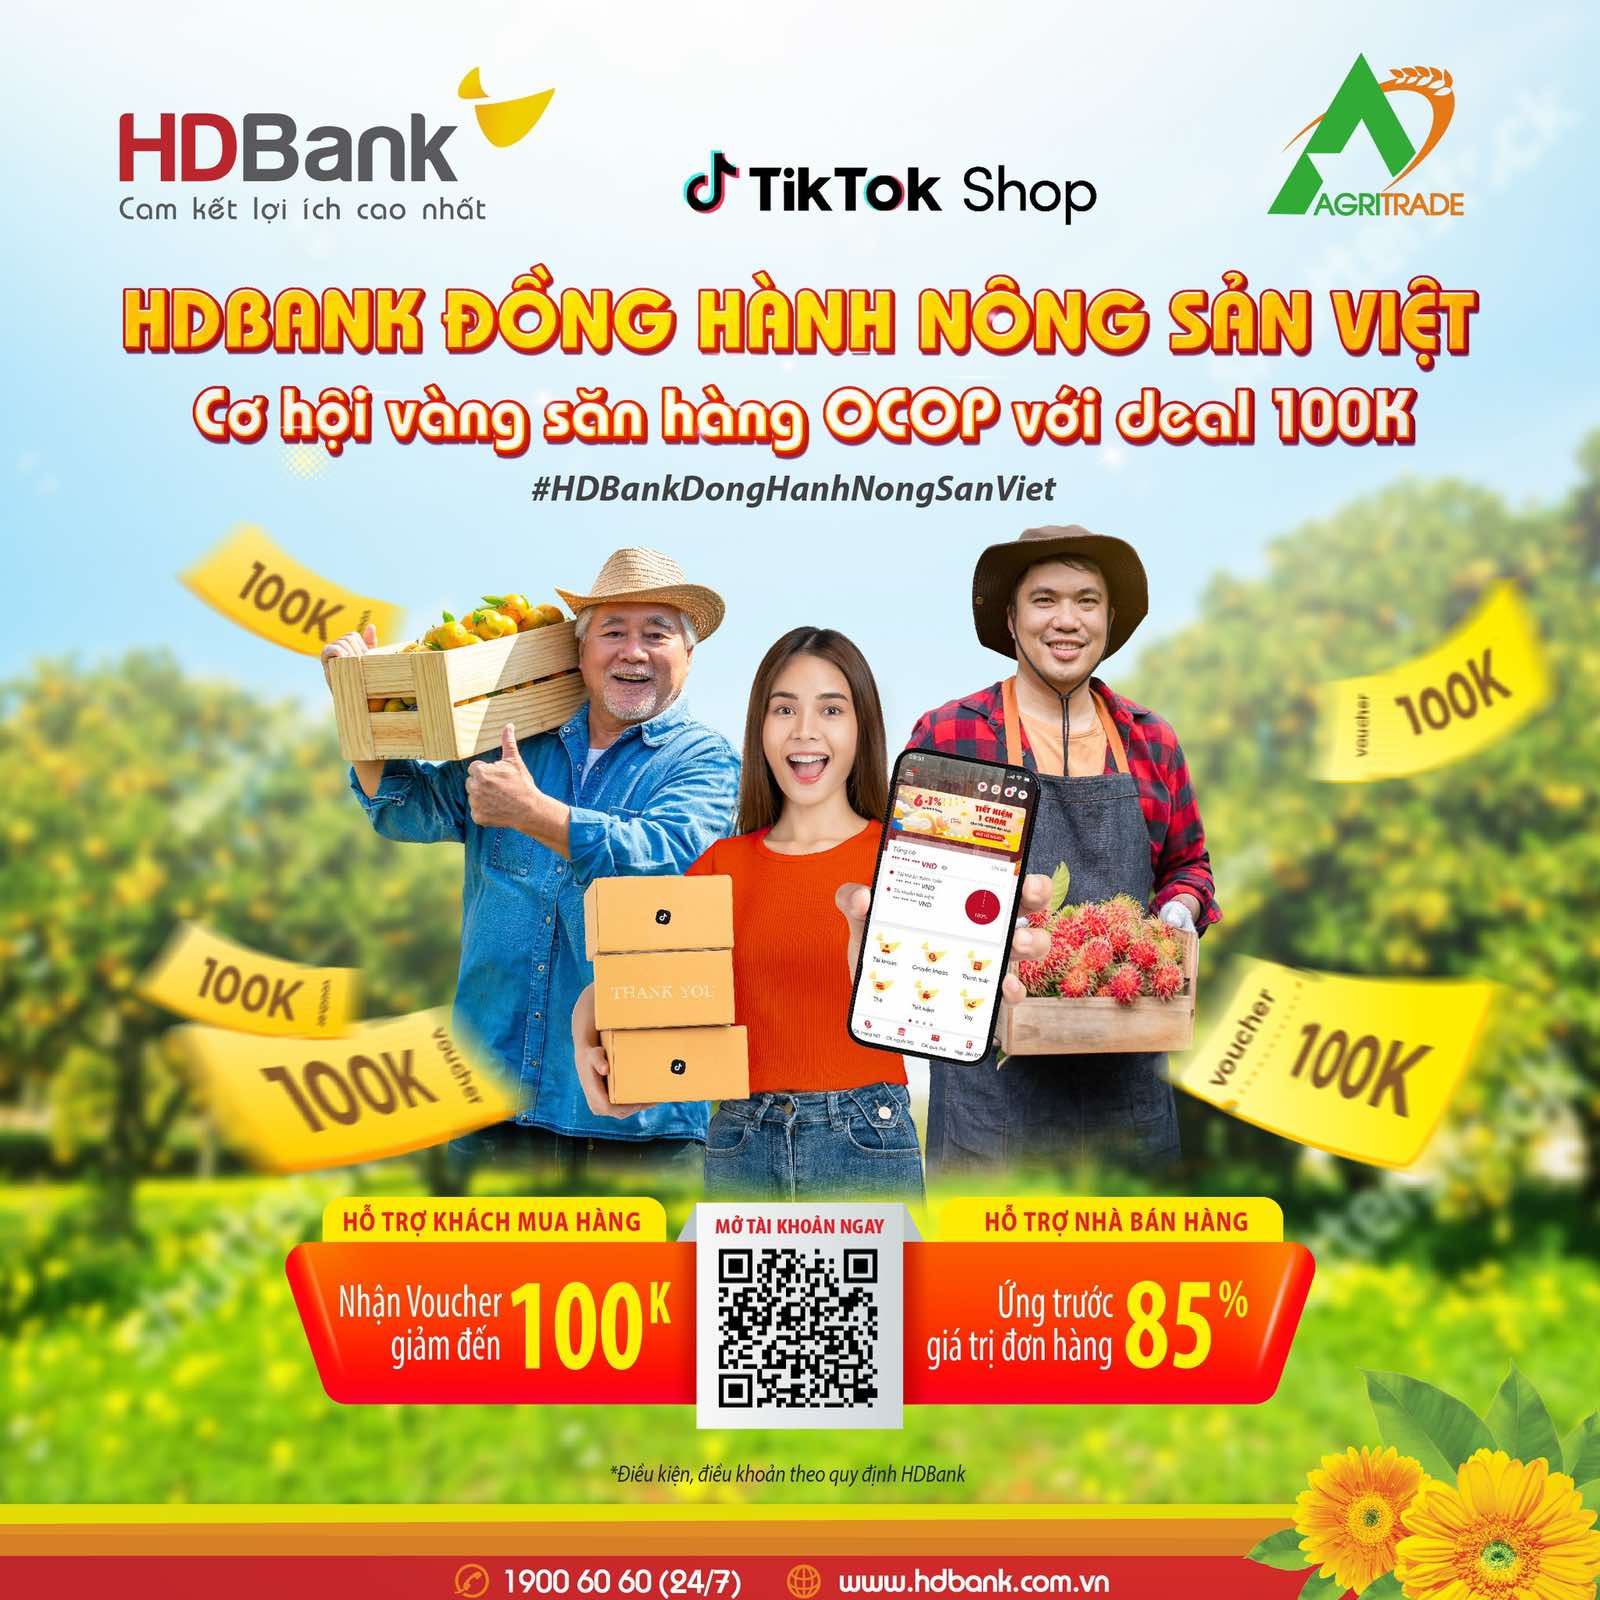 HDBank cùng Agritrade thúc đẩy tiêu thụ nông sản Việt trên nền tảng số - Ảnh 2.